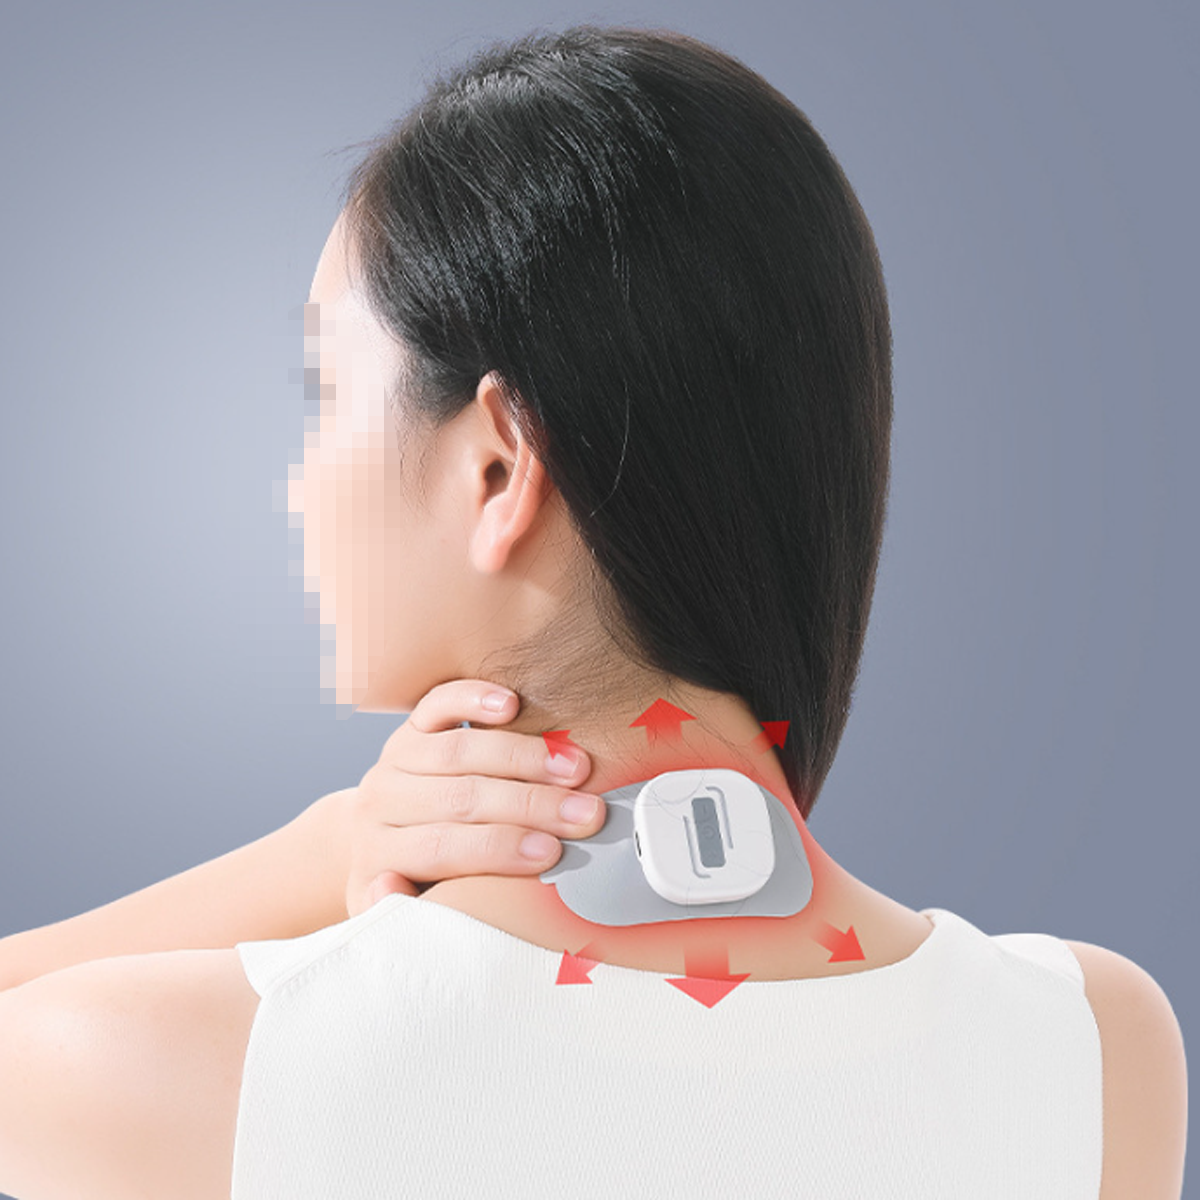 LACAMAX Wiederaufladbares Ganzkörpermassagegerät - Impulsmassage, tragen mehrere zu Modi, Massagegerät leicht